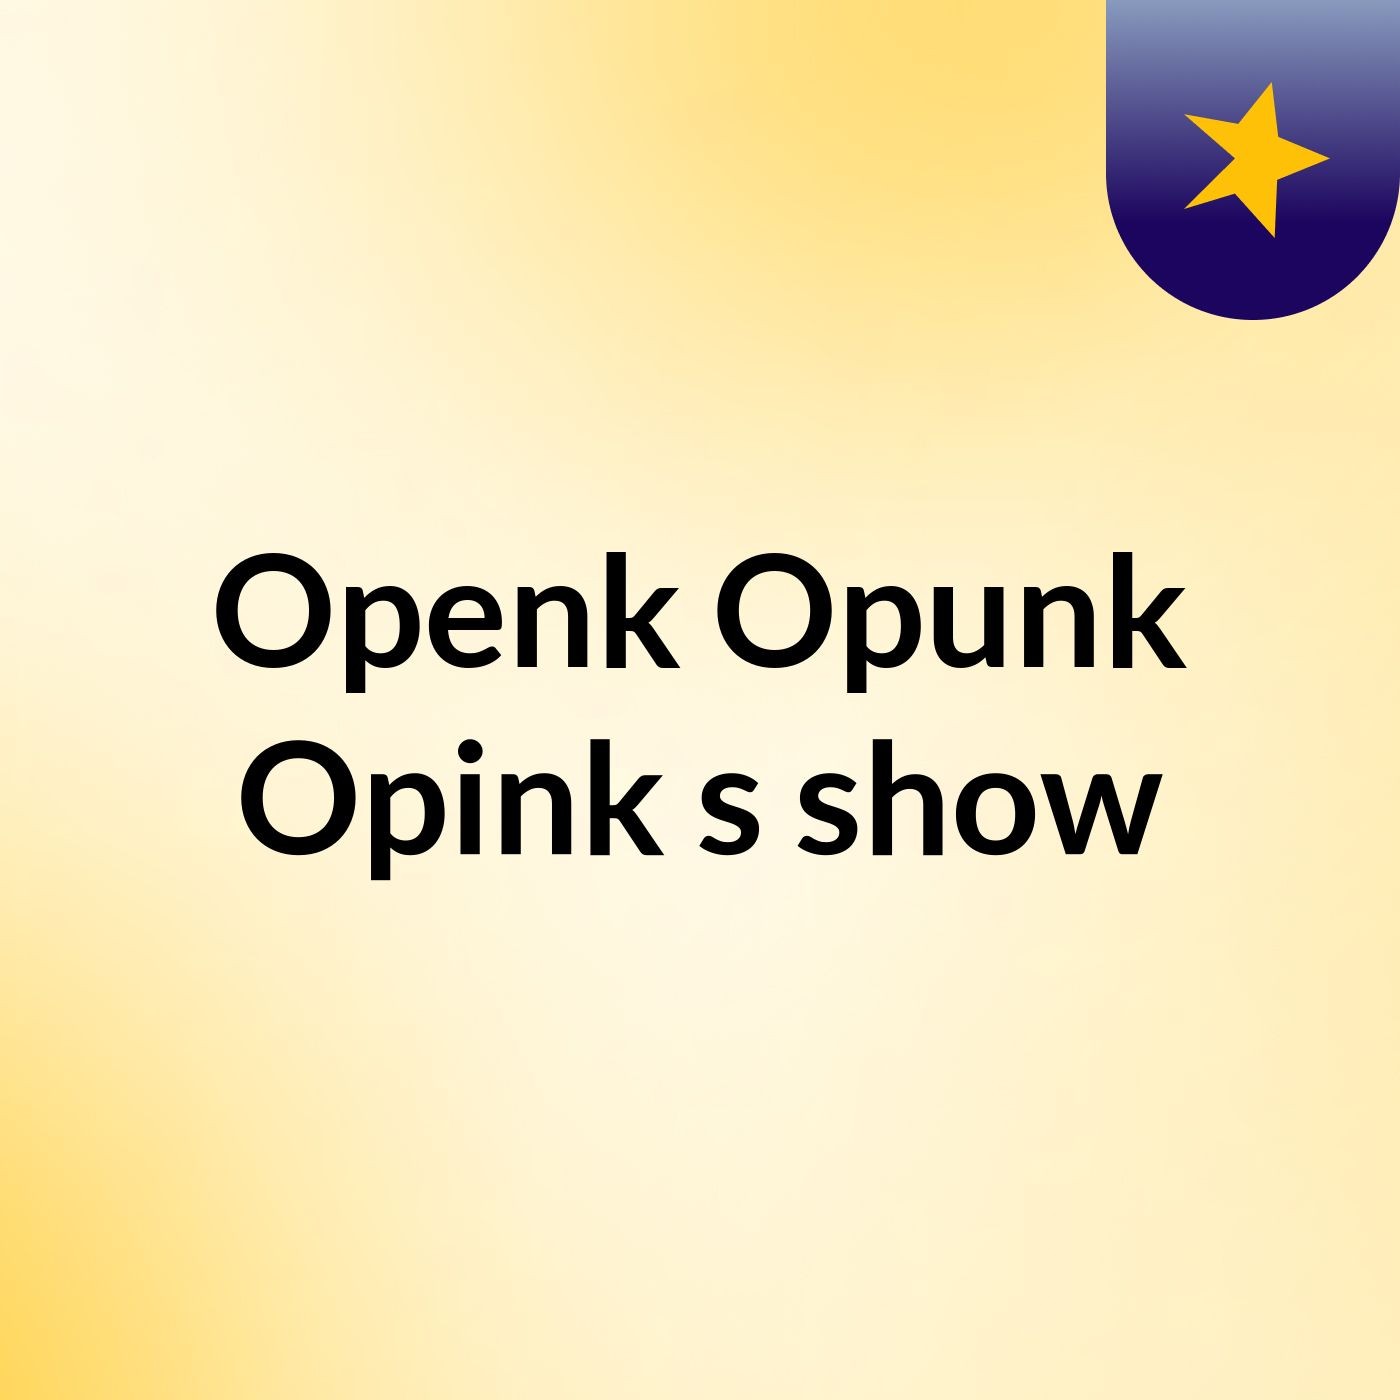 Episode 2 - Openk Opunk Opink's show